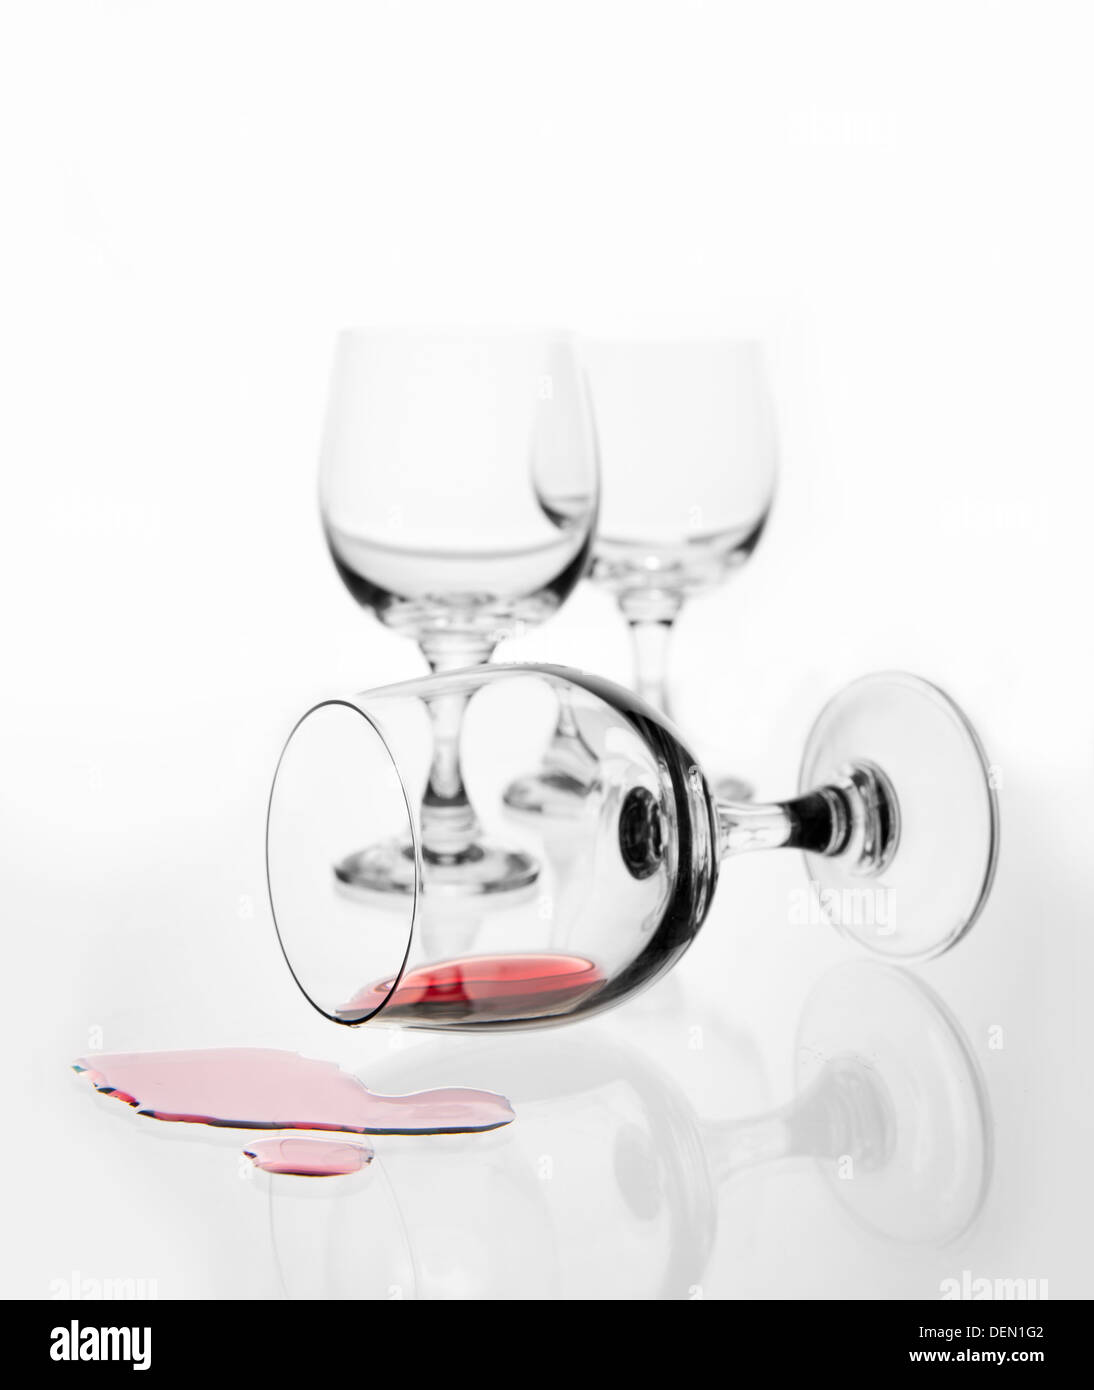 A renversé un verre de vin avec du vin rouge éclaboussé out Banque D'Images